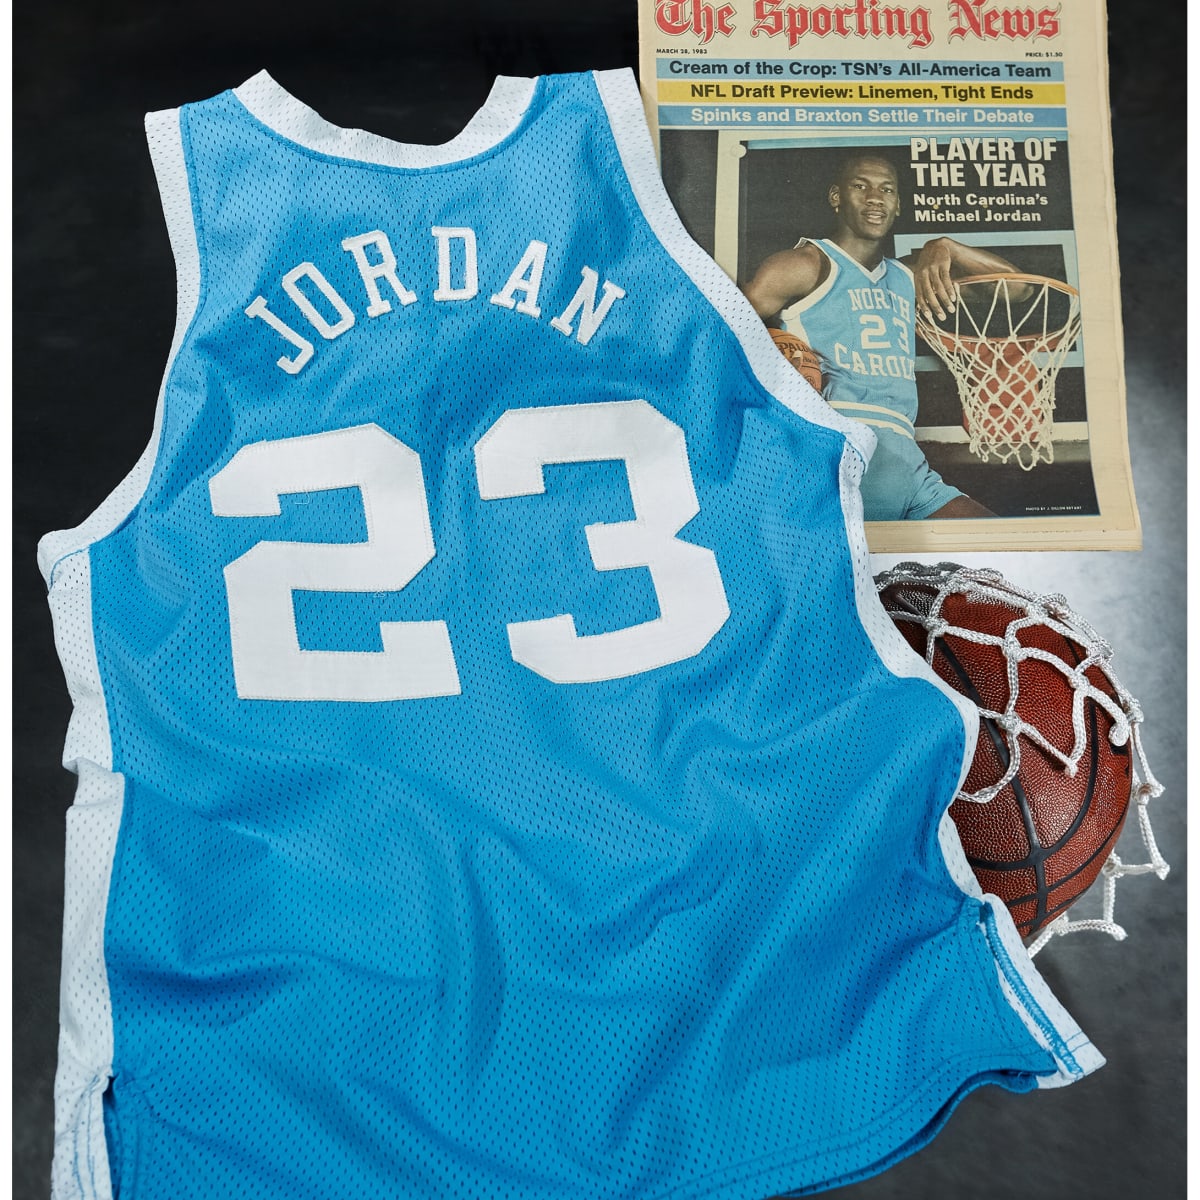 Michael Jordan Tar Heels highlights